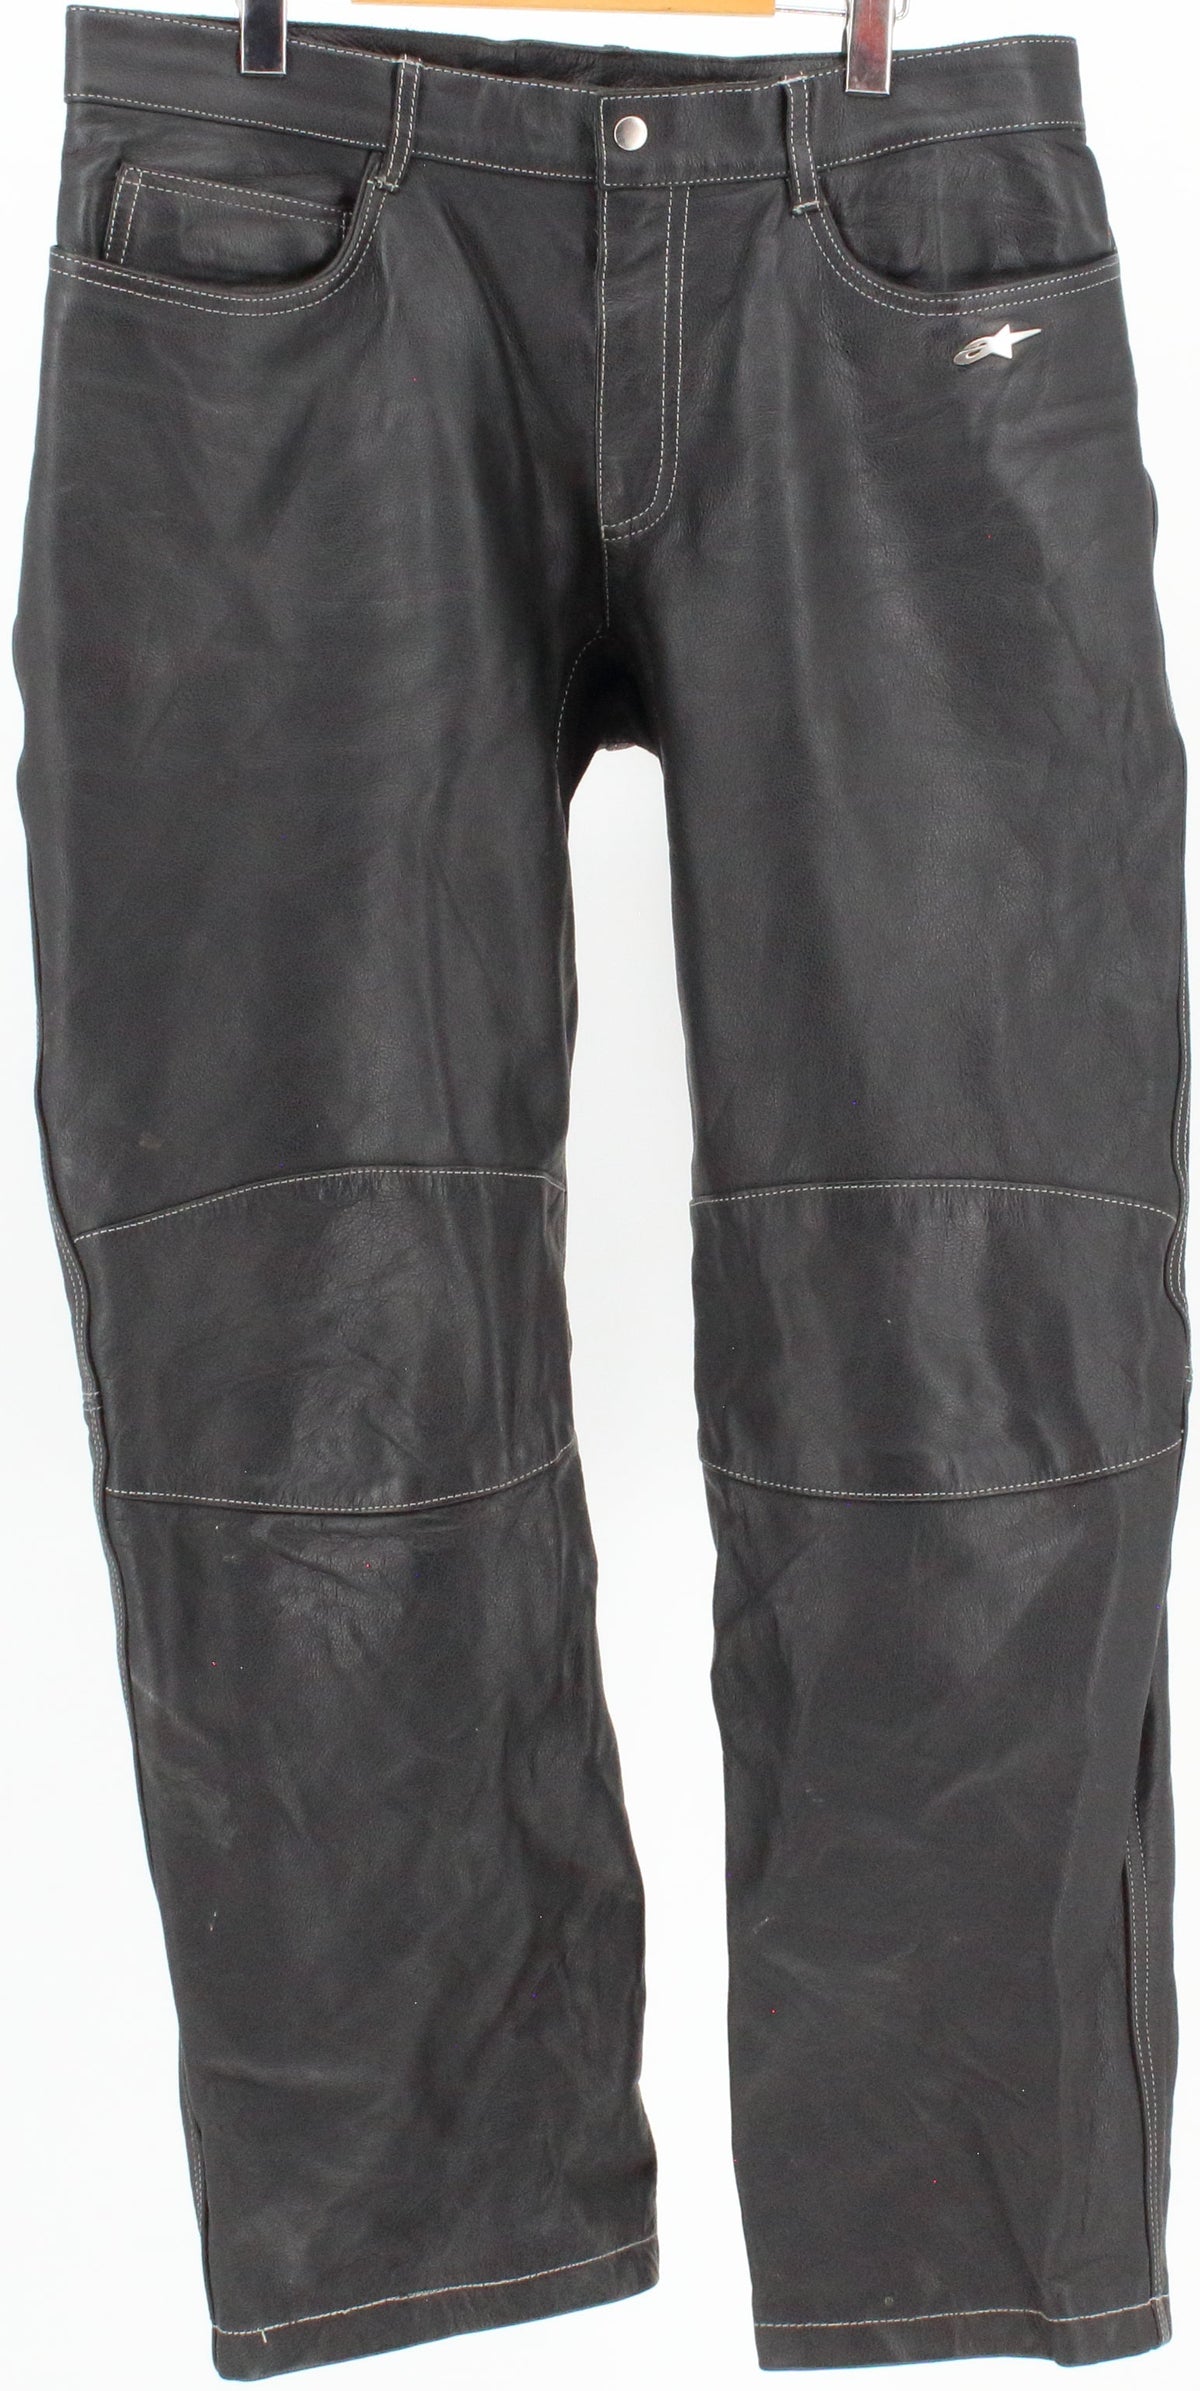 Alpinestars Black Leather Pants